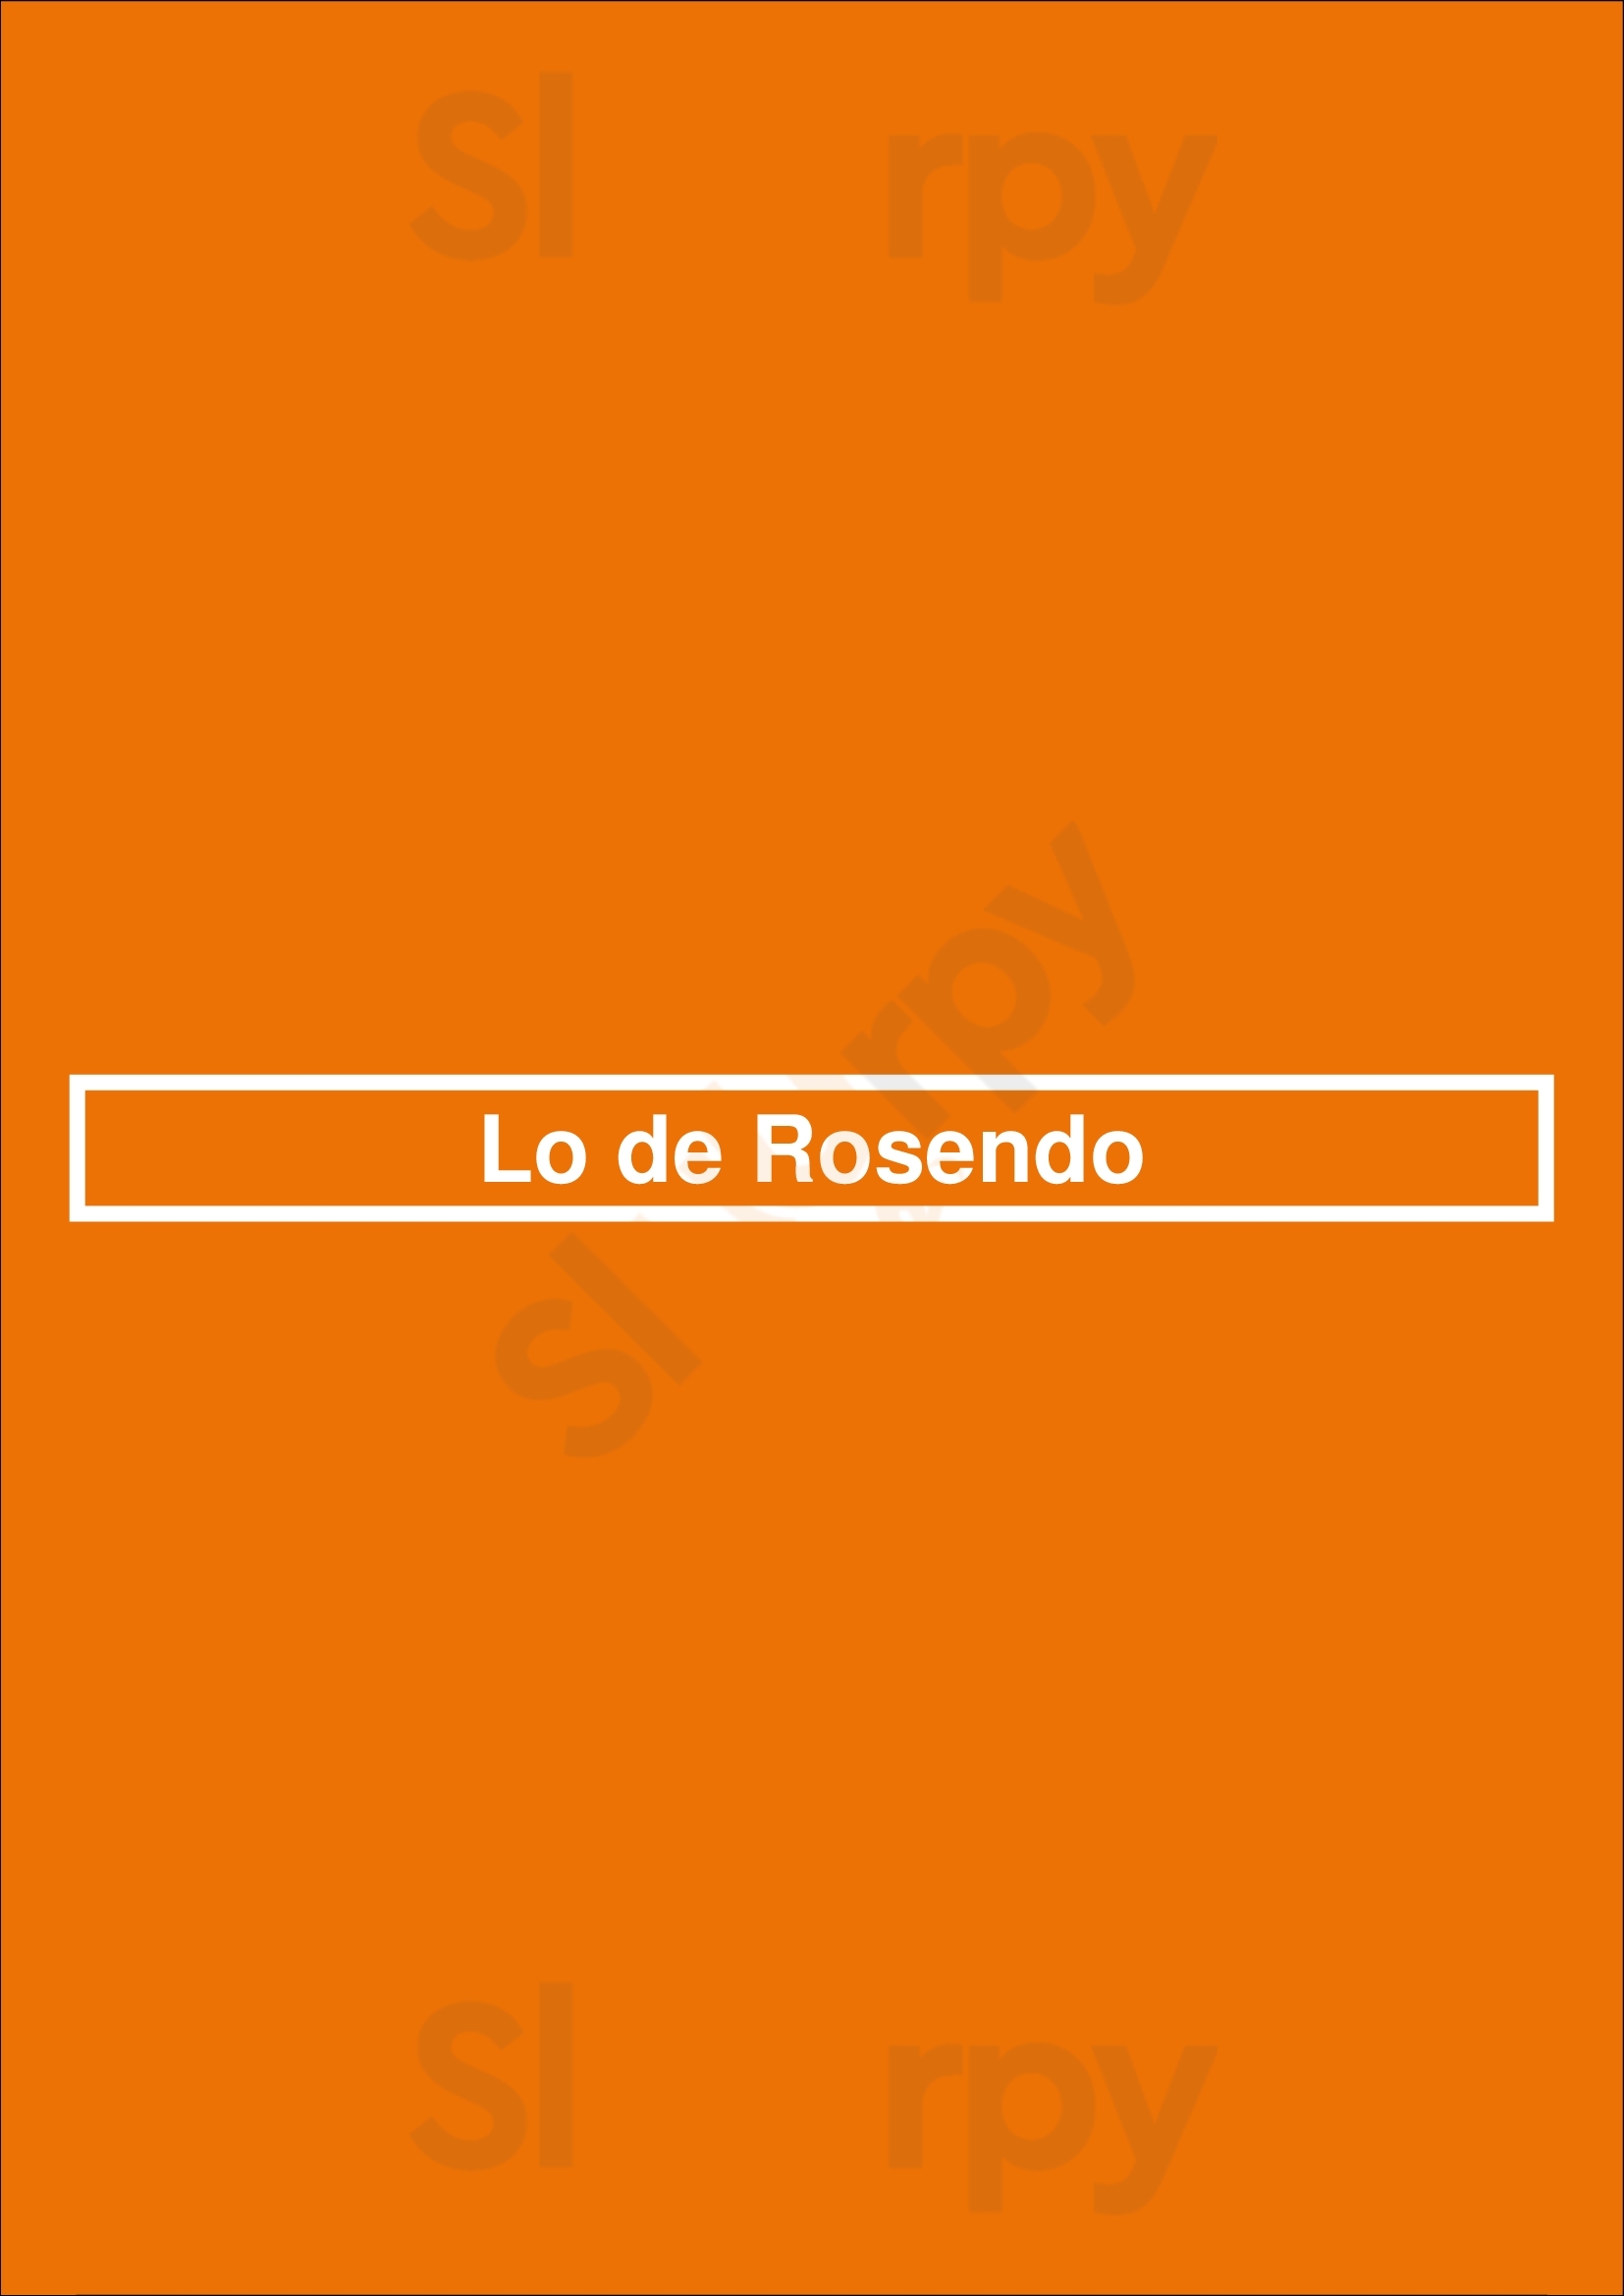 Lo De Rosendo Buenos Aires Menu - 1